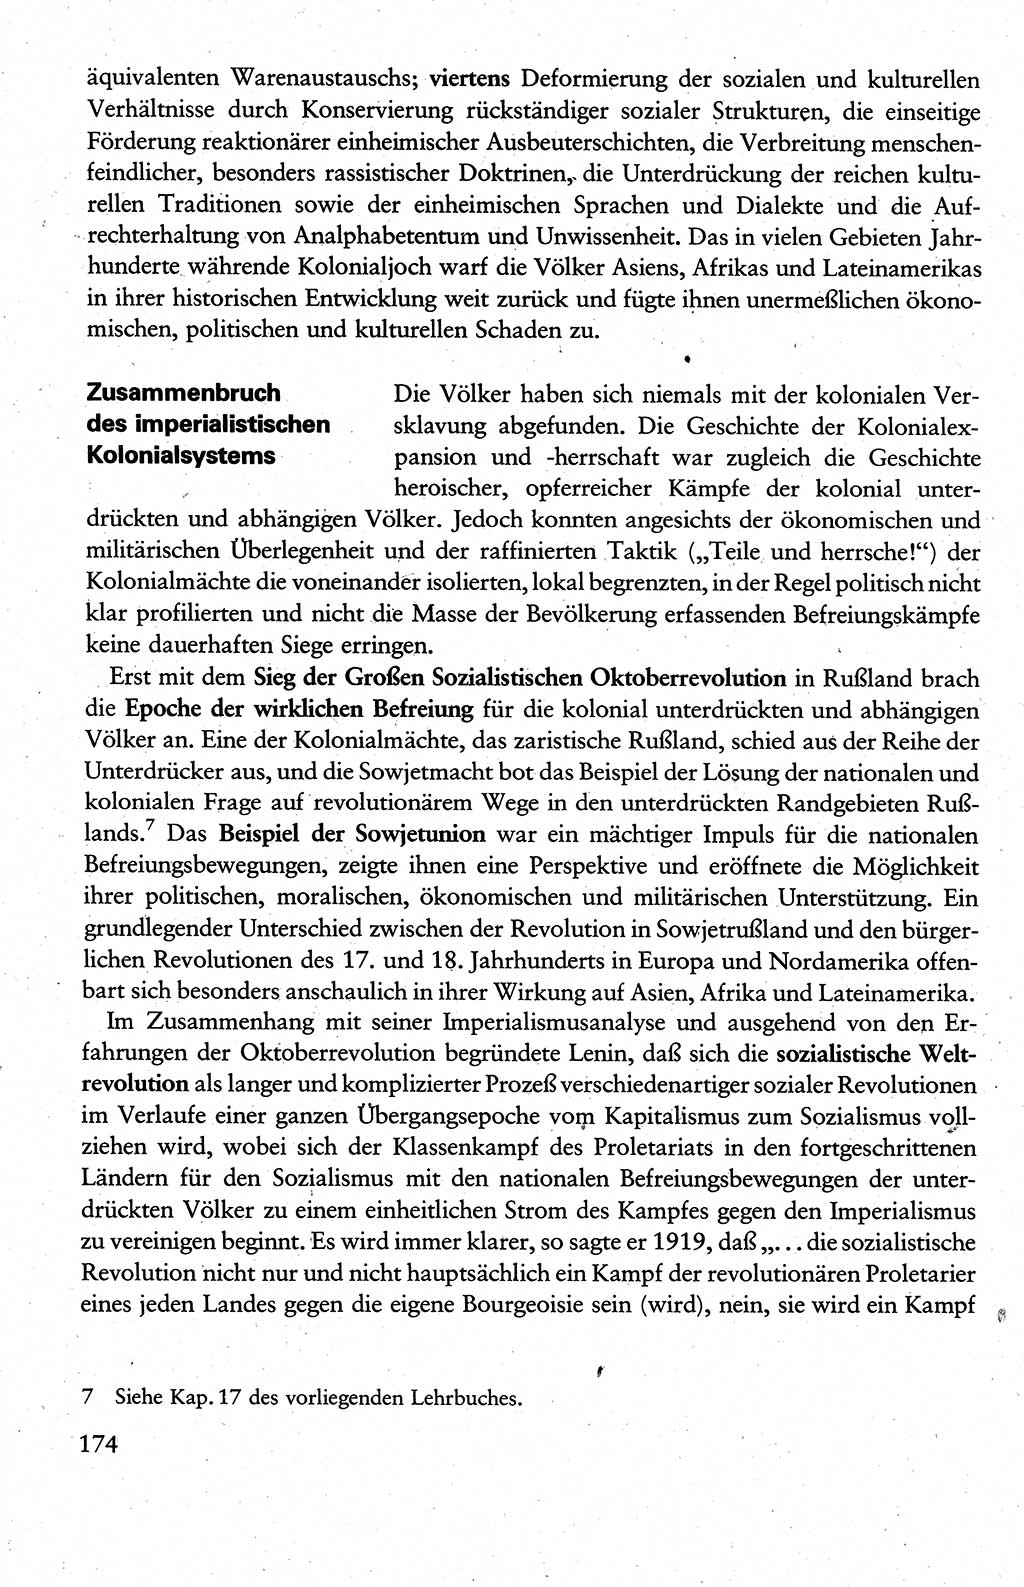 Wissenschaftlicher Kommunismus [Deutsche Demokratische Republik (DDR)], Lehrbuch für das marxistisch-leninistische Grundlagenstudium 1983, Seite 174 (Wiss. Komm. DDR Lb. 1983, S. 174)